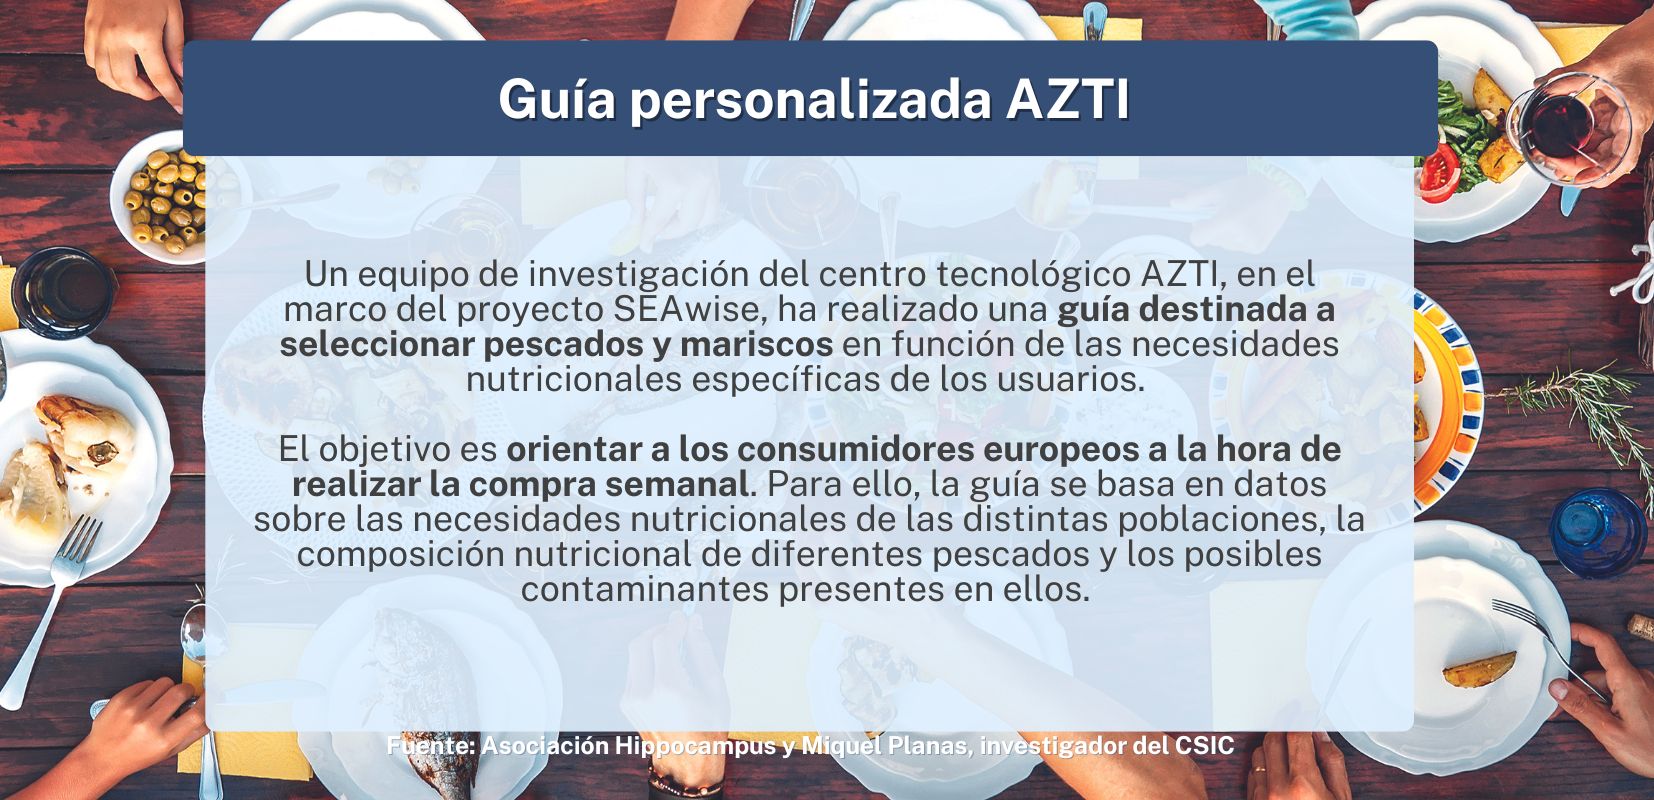 Guía personalizada Azti